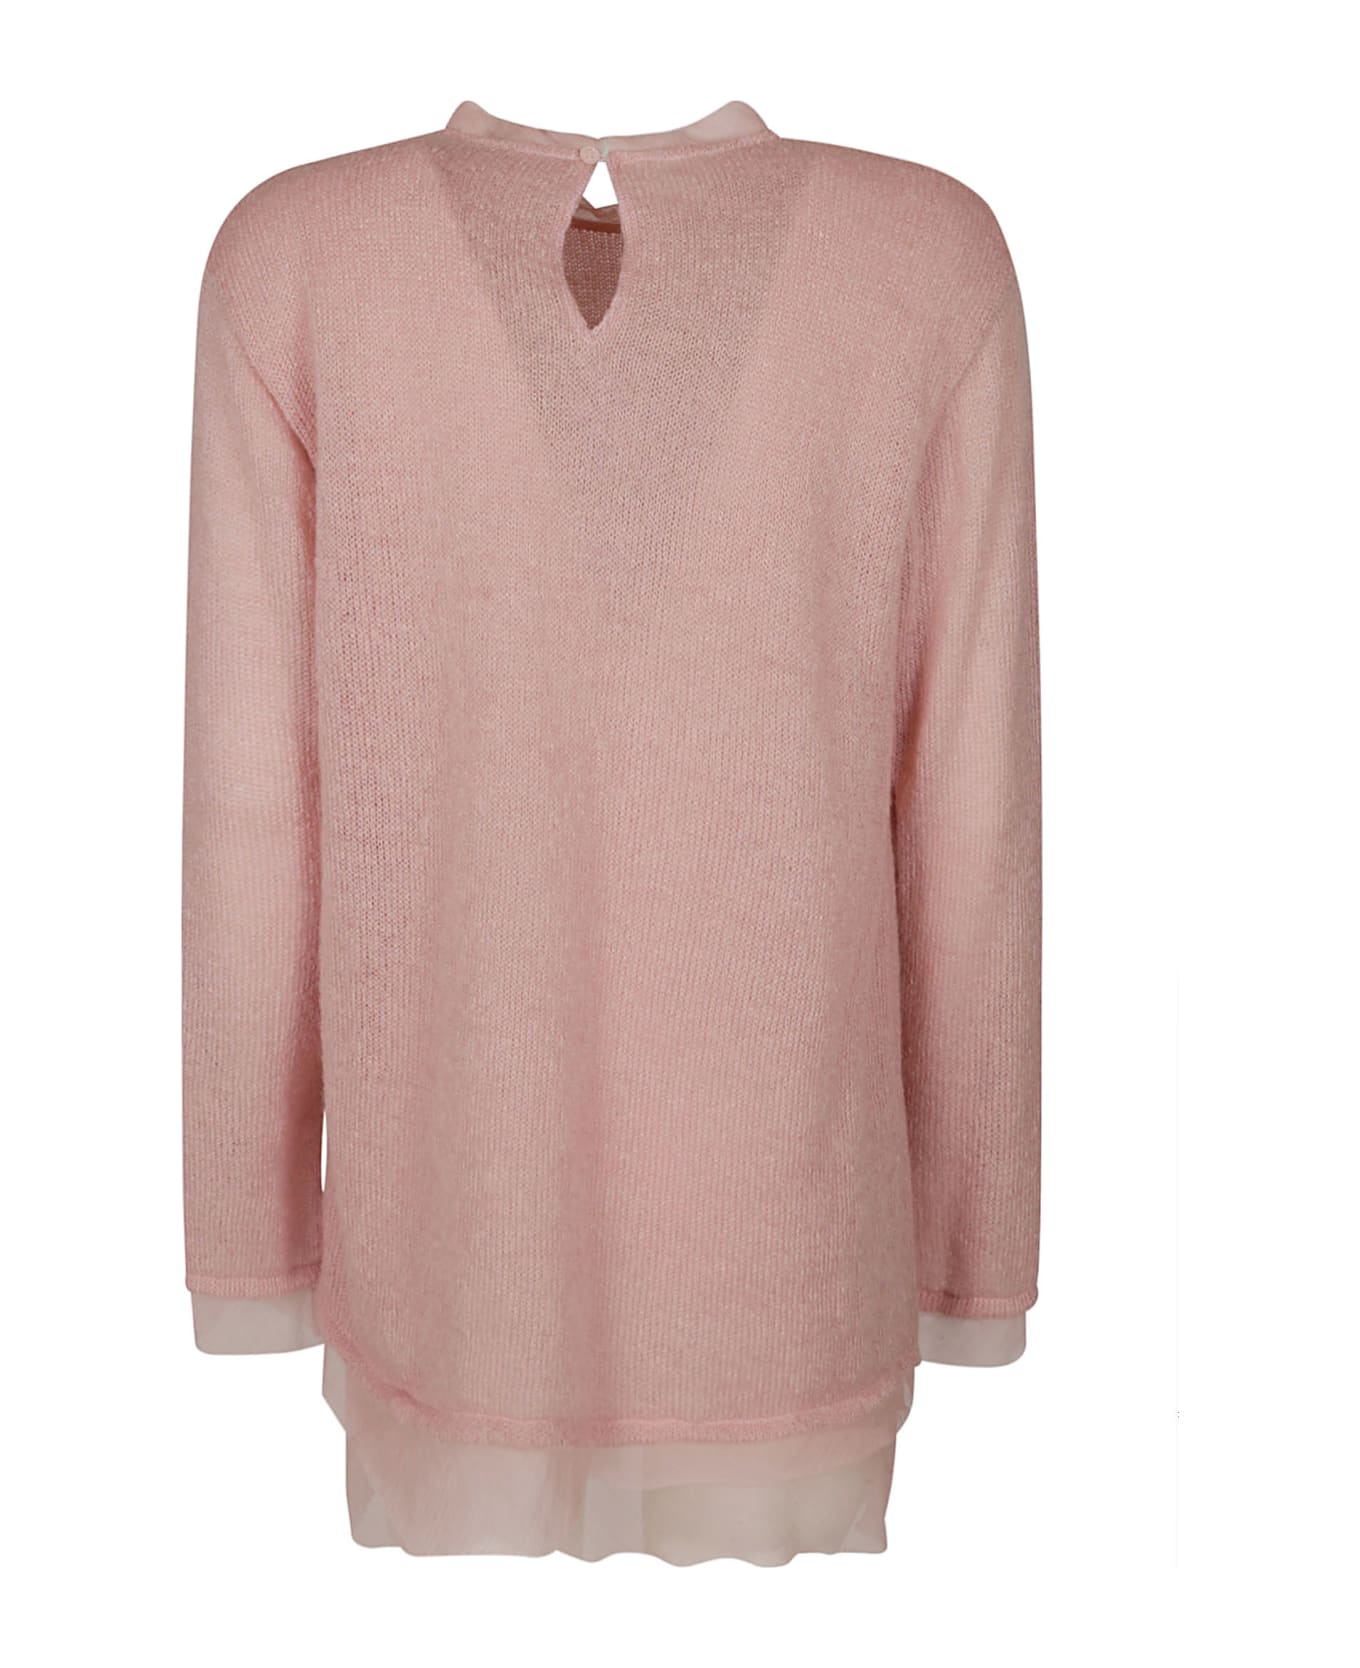 Ermanno Scervino Floral Applique Knit Sweater - Pink ニットウェア